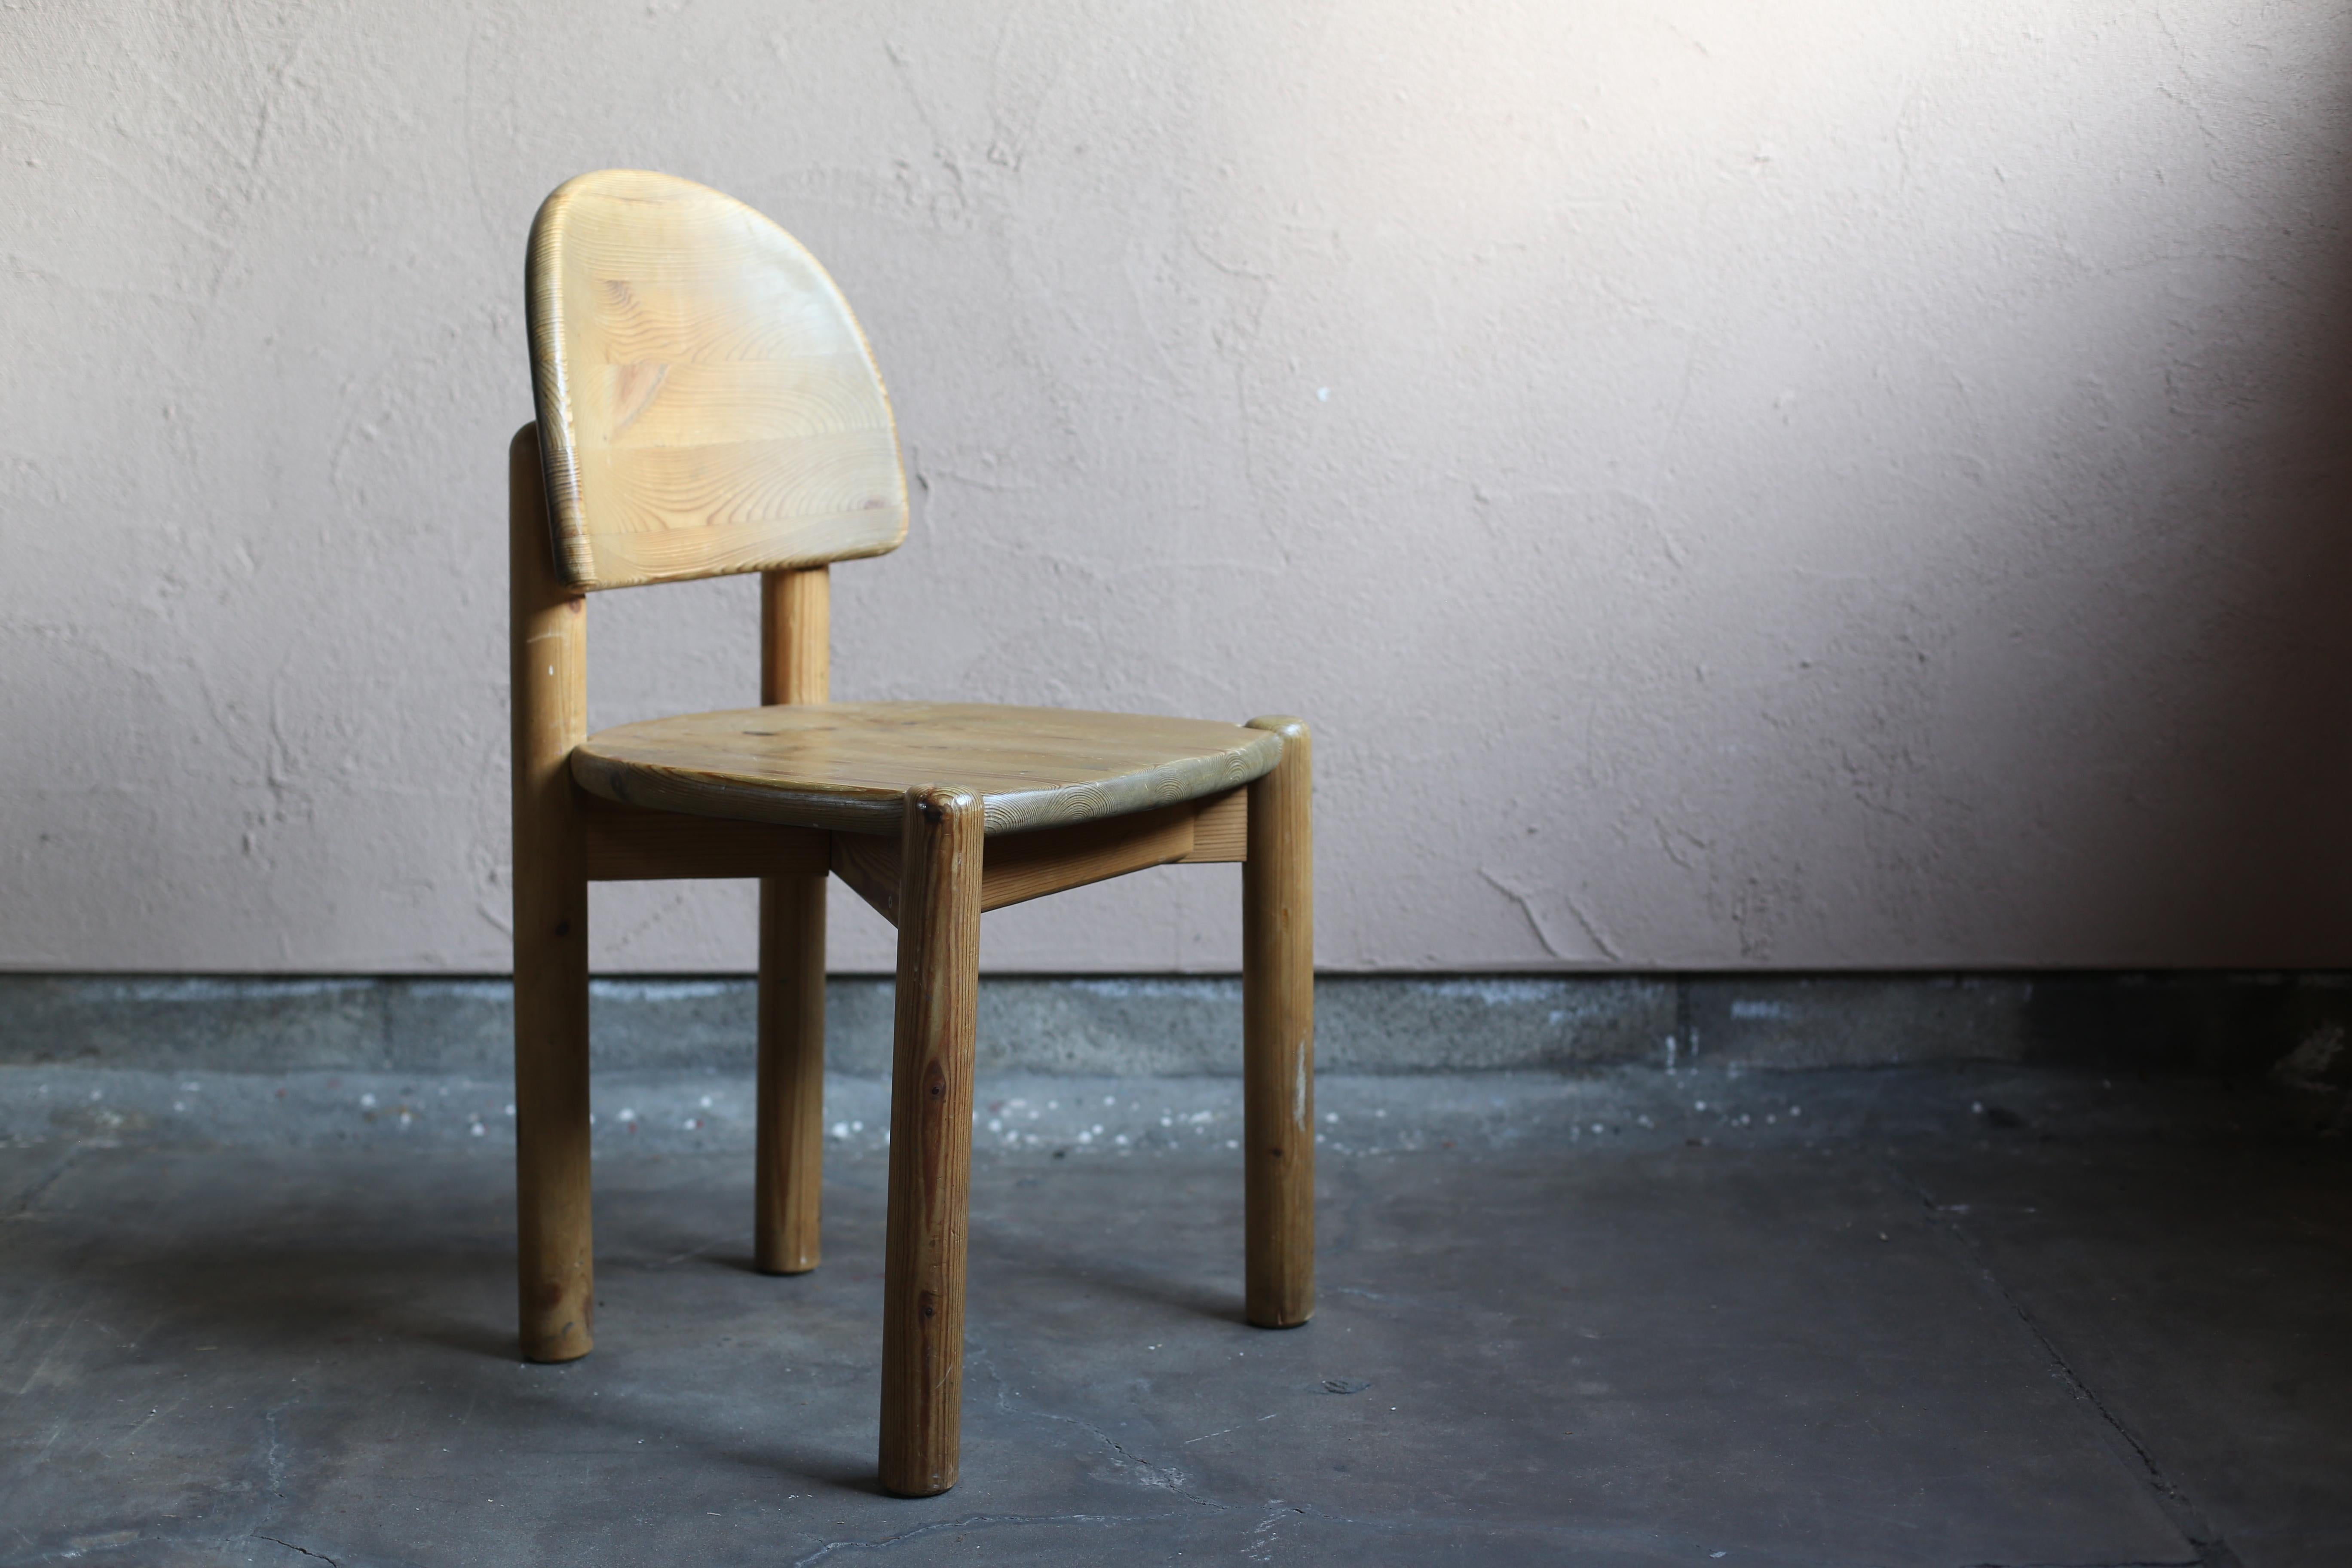 Danish Pine Wood Chairs by Rainer Daumiller